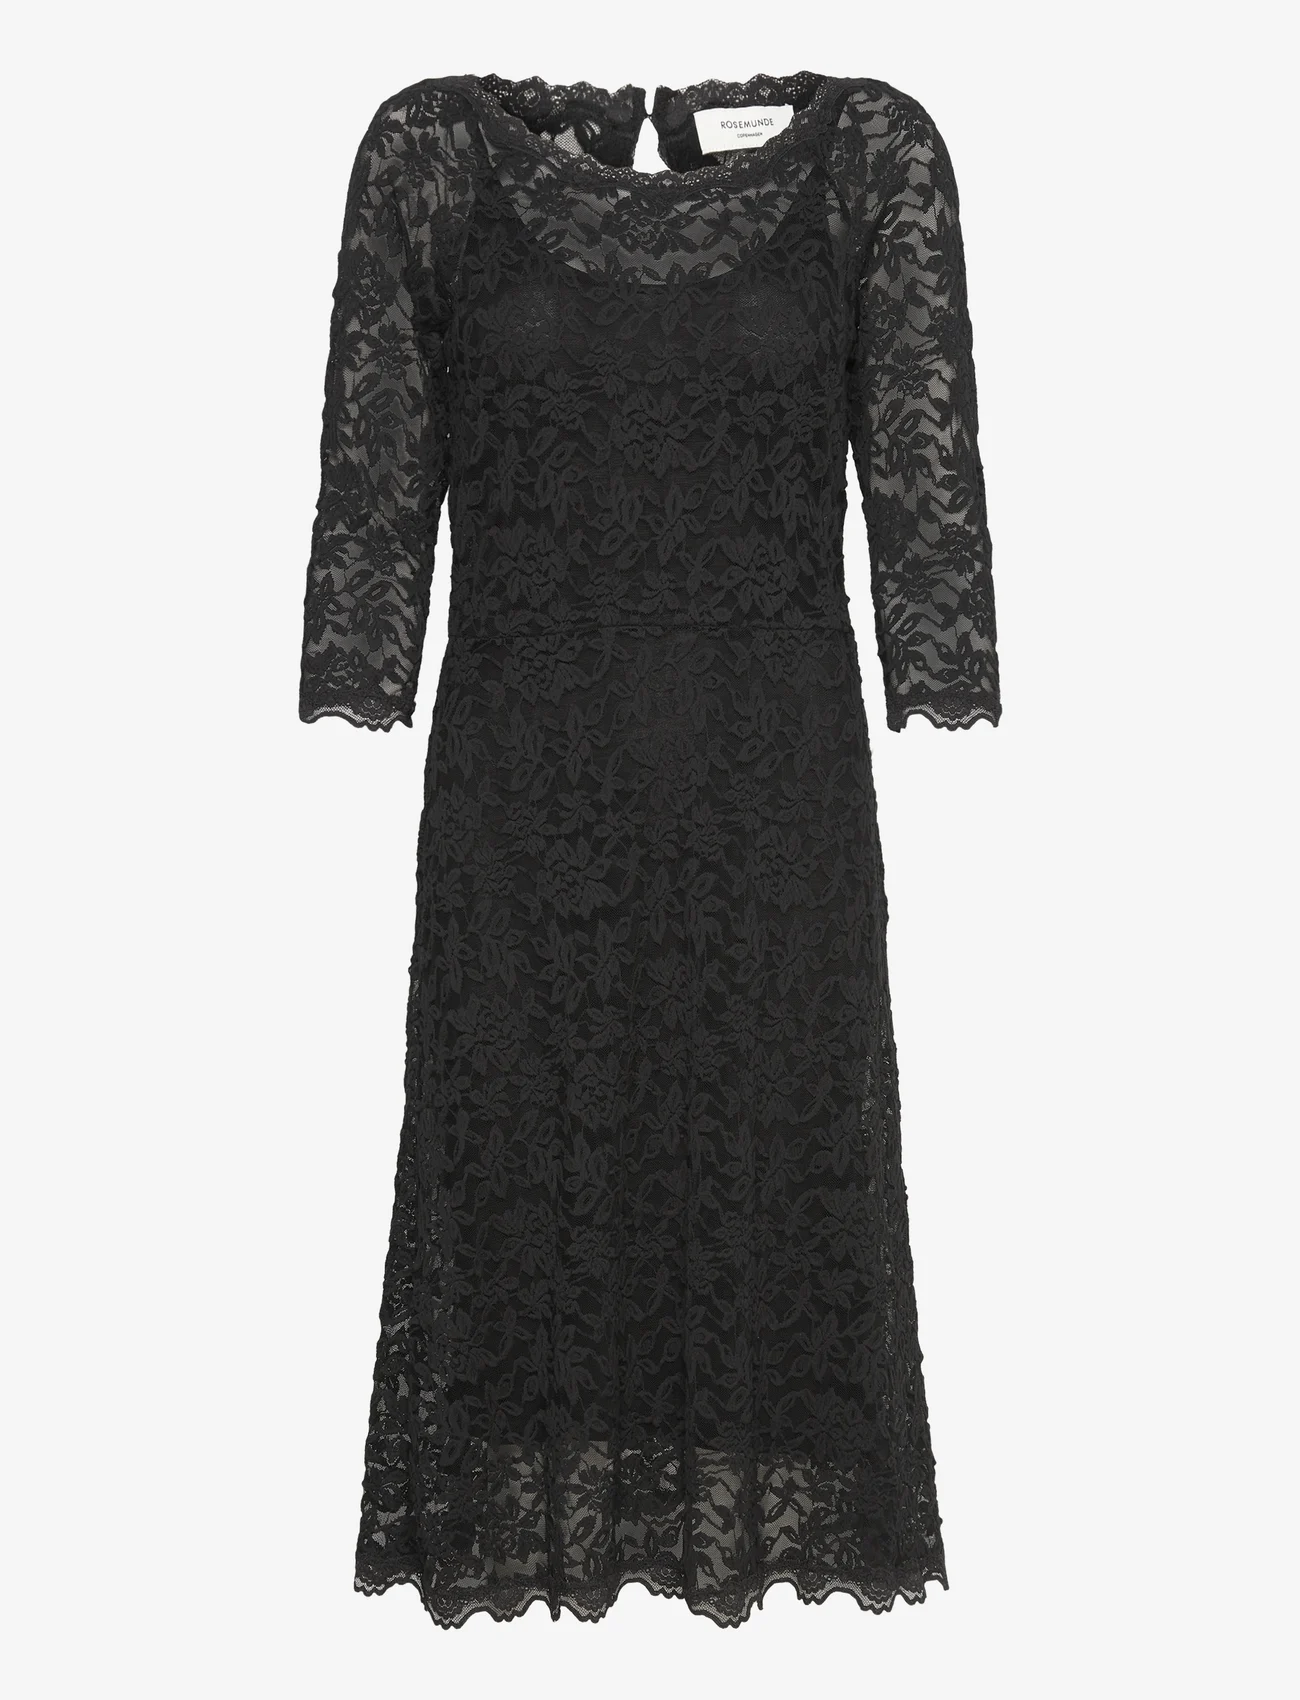 Rosemunde - Dress - spitzenkleider - black - 0